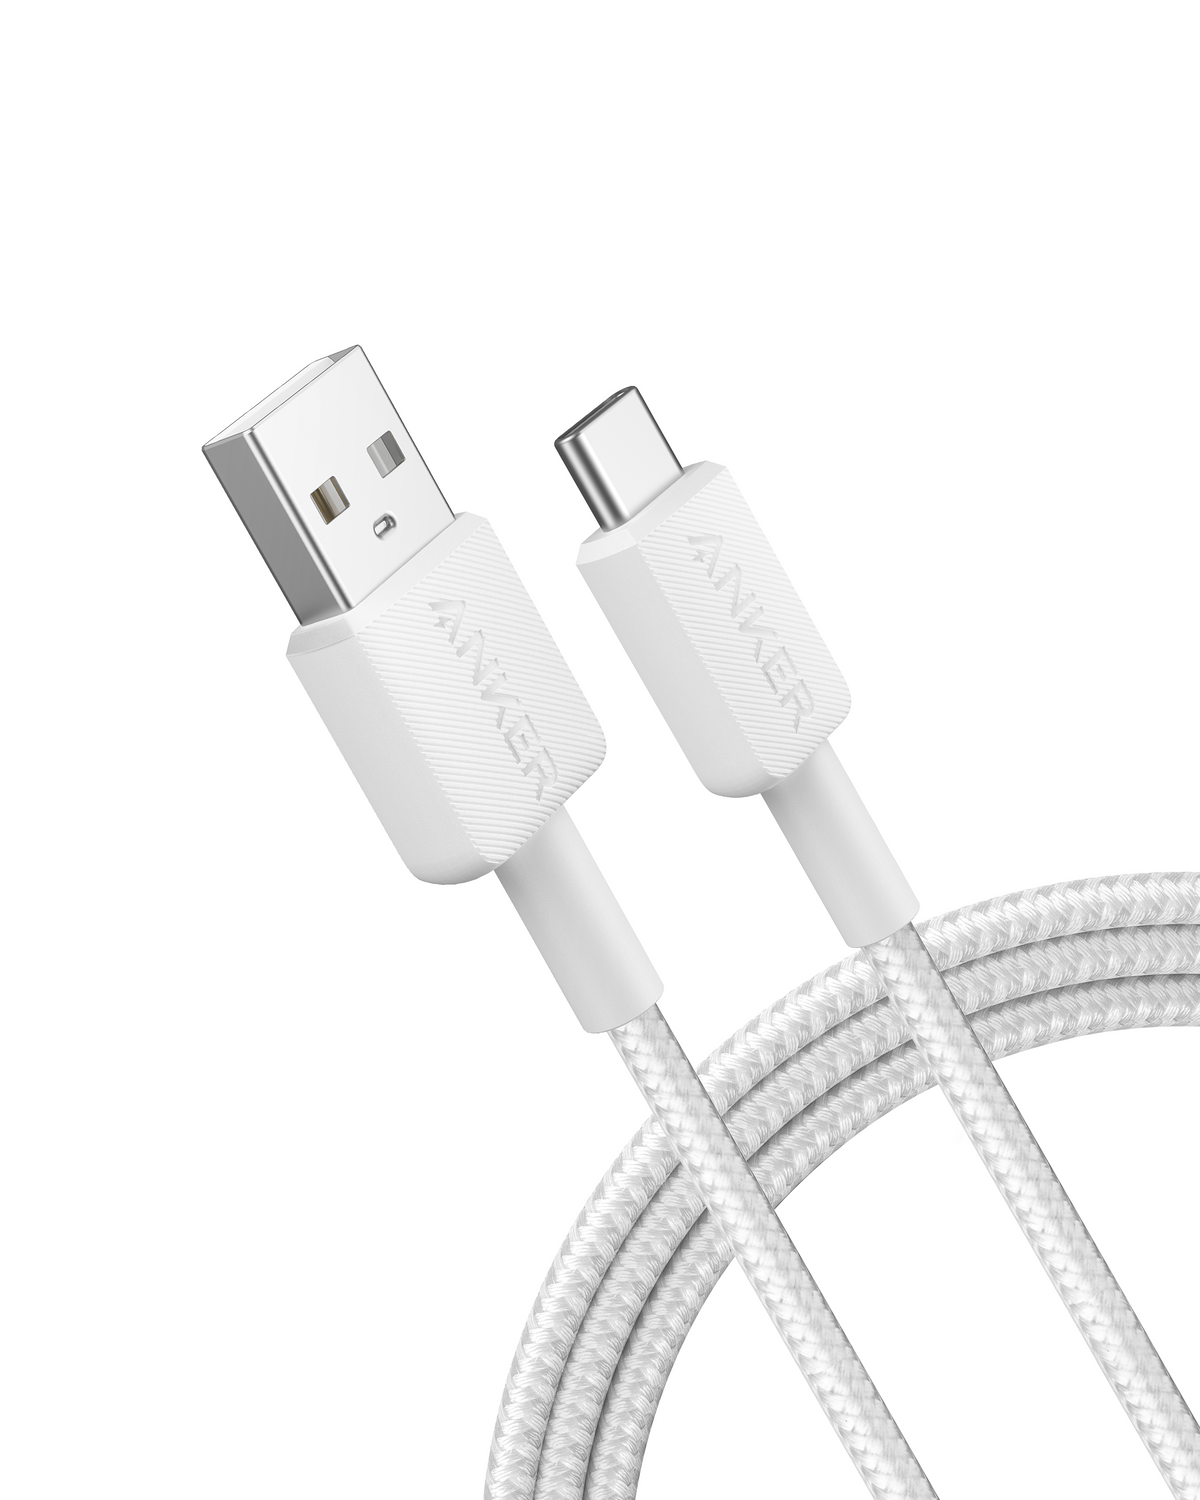 Anker &lt;b&gt;322&lt;/b&gt;  USB-A to USB-C Cable